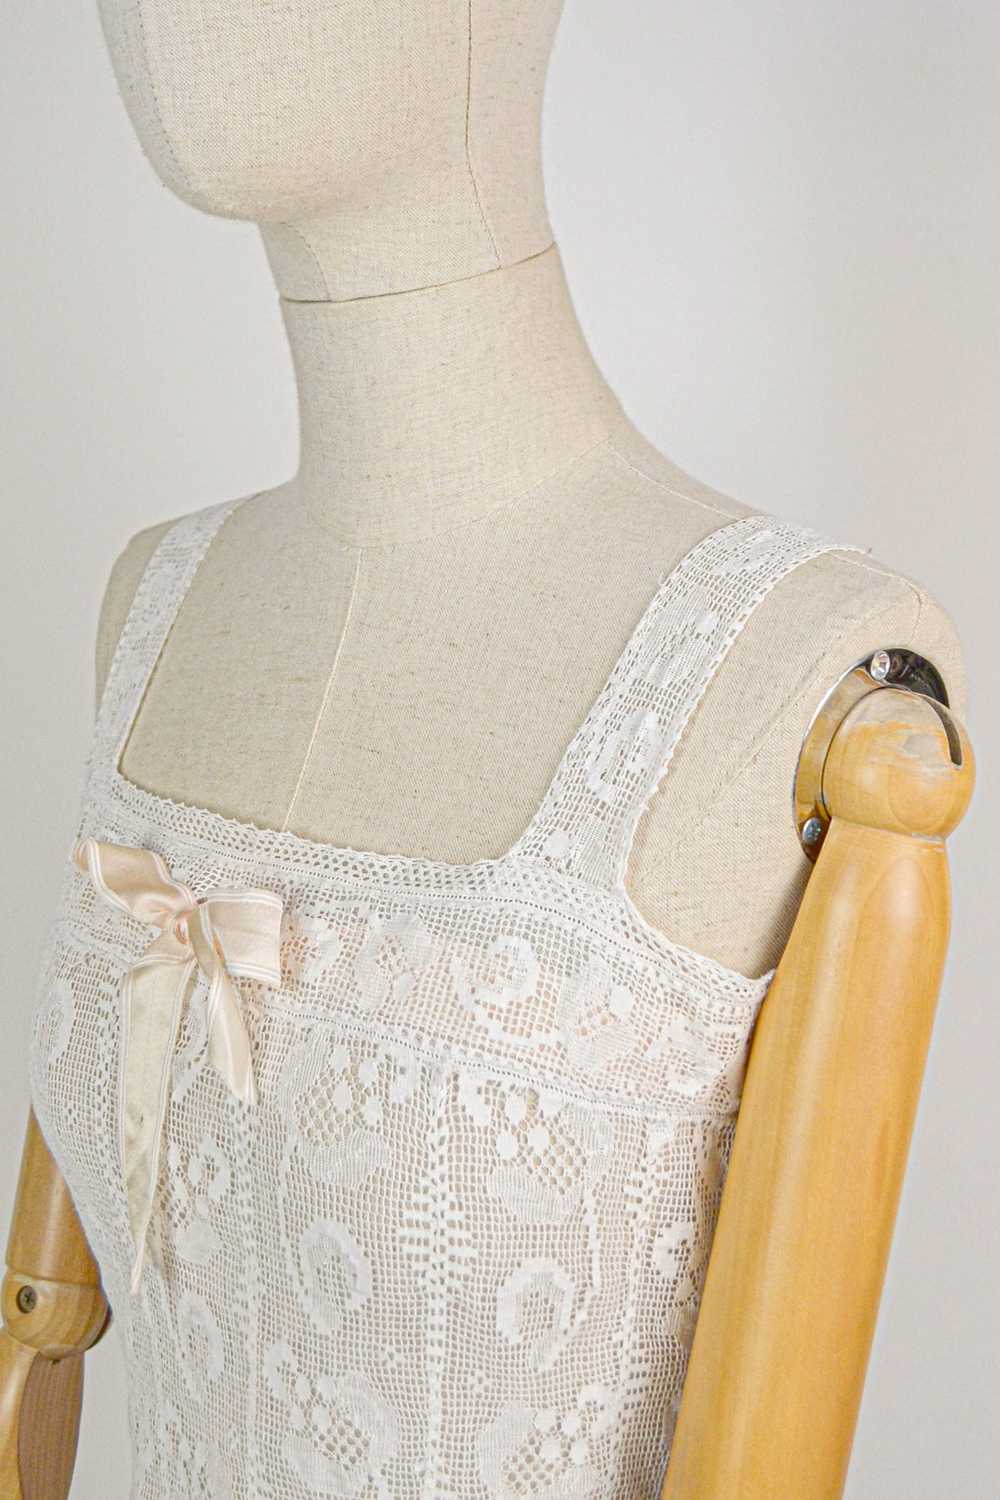 HONORINE - 1920s Vintage Cotton Lace Bralette - S… - image 9